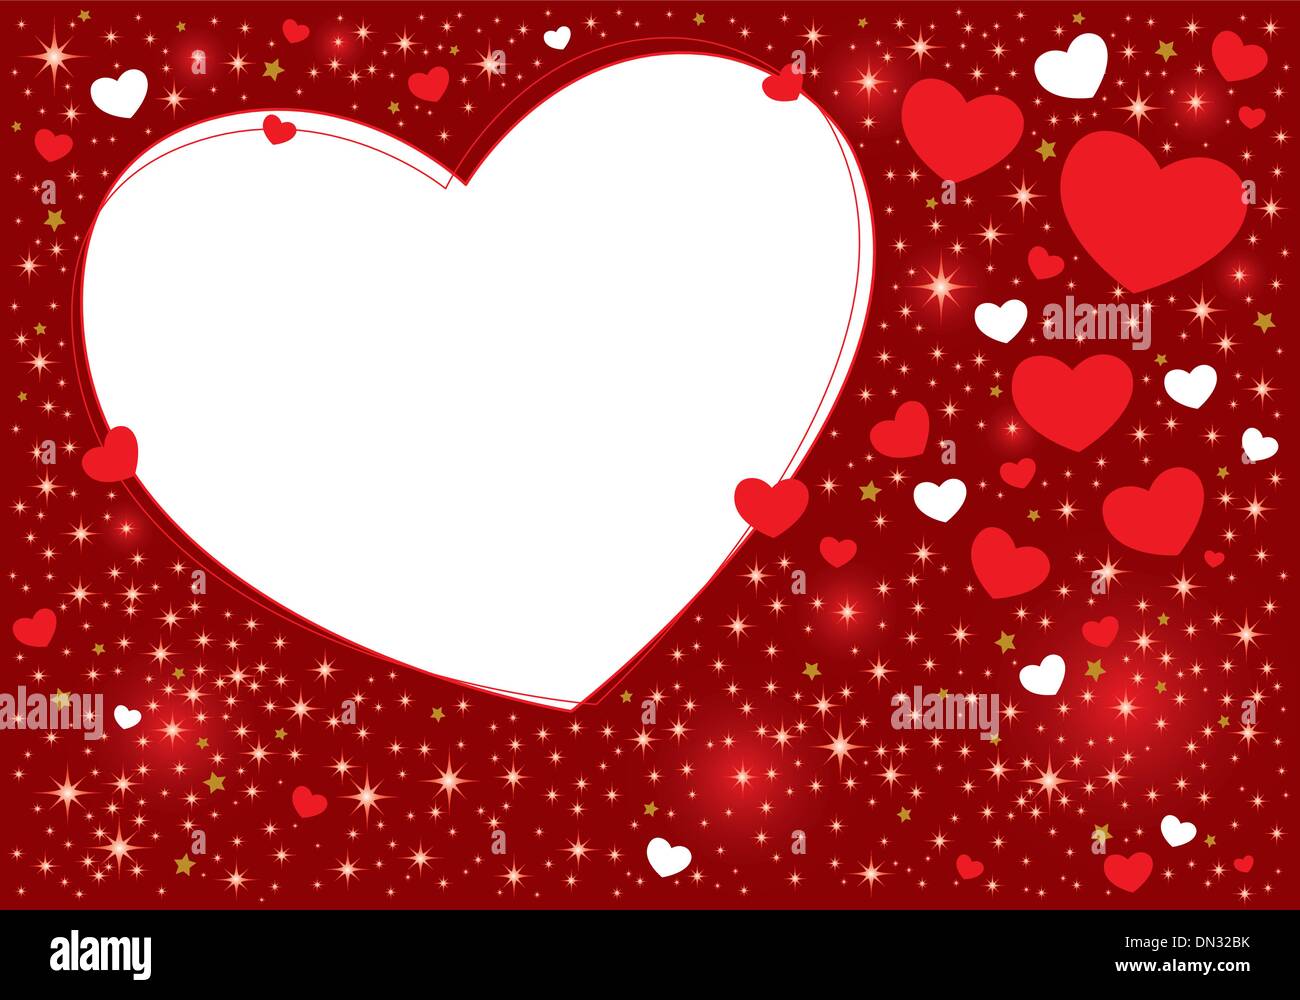 Trái tim - biểu tượng của tình yêu và sự sống. Bạn đang tìm kiếm những hình ảnh đẹp về trái tim để dùng làm hình nền cho điện thoại hay ảnh bìa cho Facebook? Điều đó rất đơn giản, hãy click vào hình ảnh để tìm kiếm nhiều mẫu đa dạng nhé!